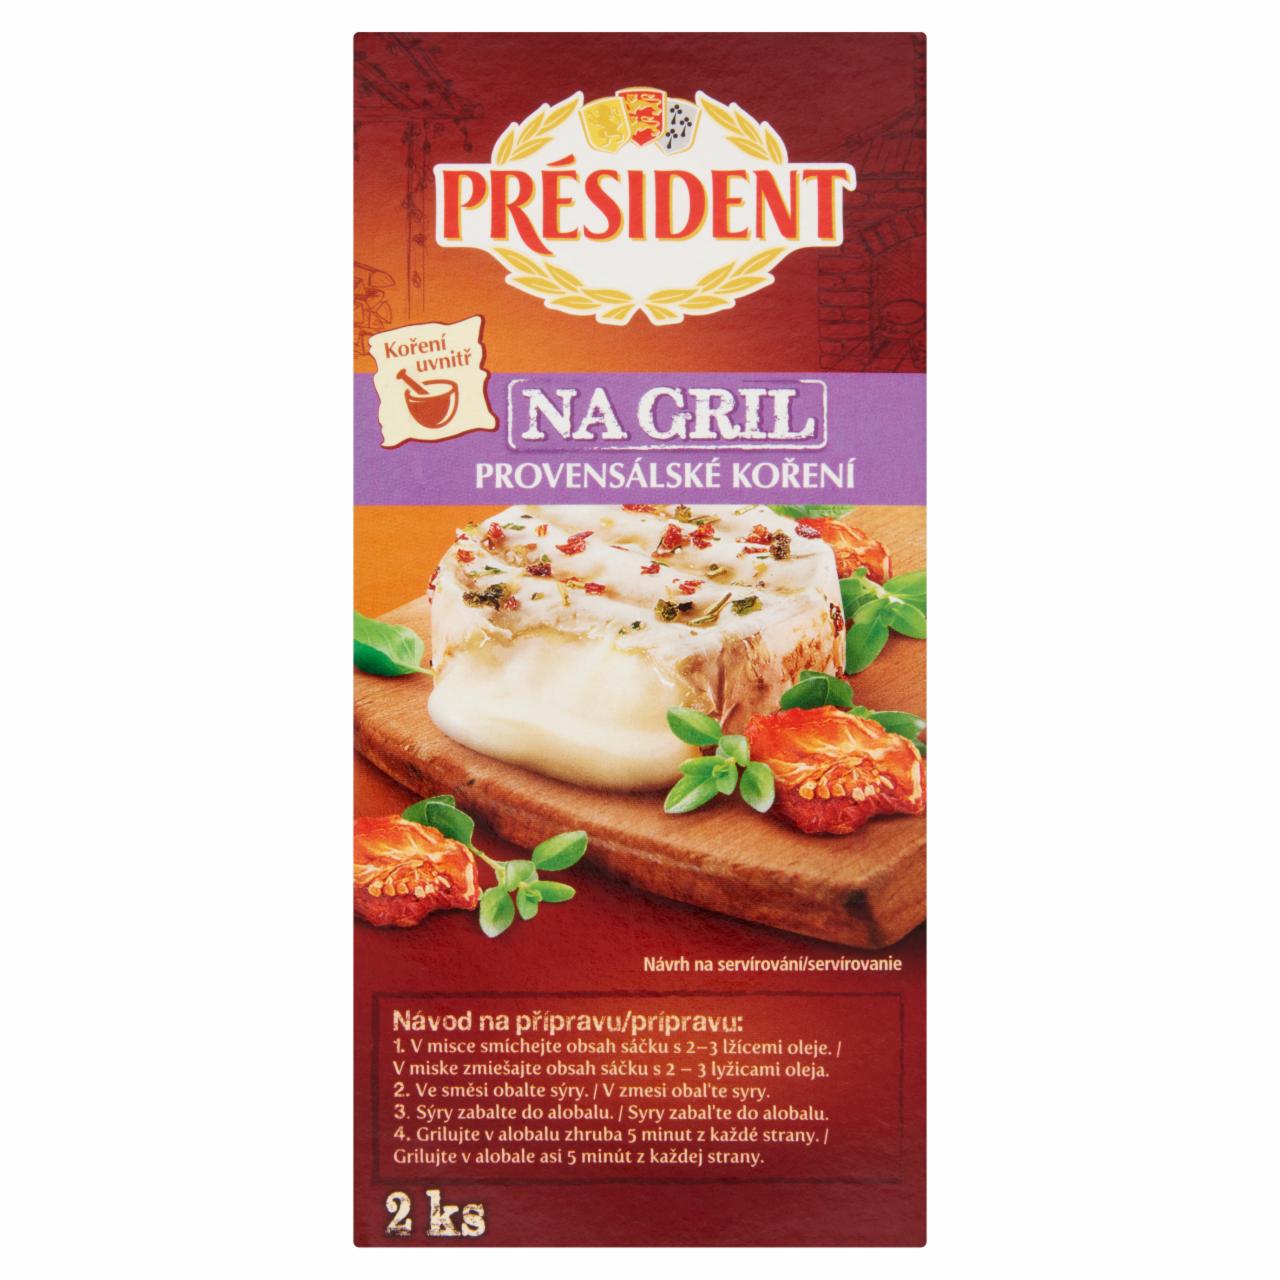 Képek - Président grill camembert sajt 2 x 90 g + 5 g fűszerkeverék